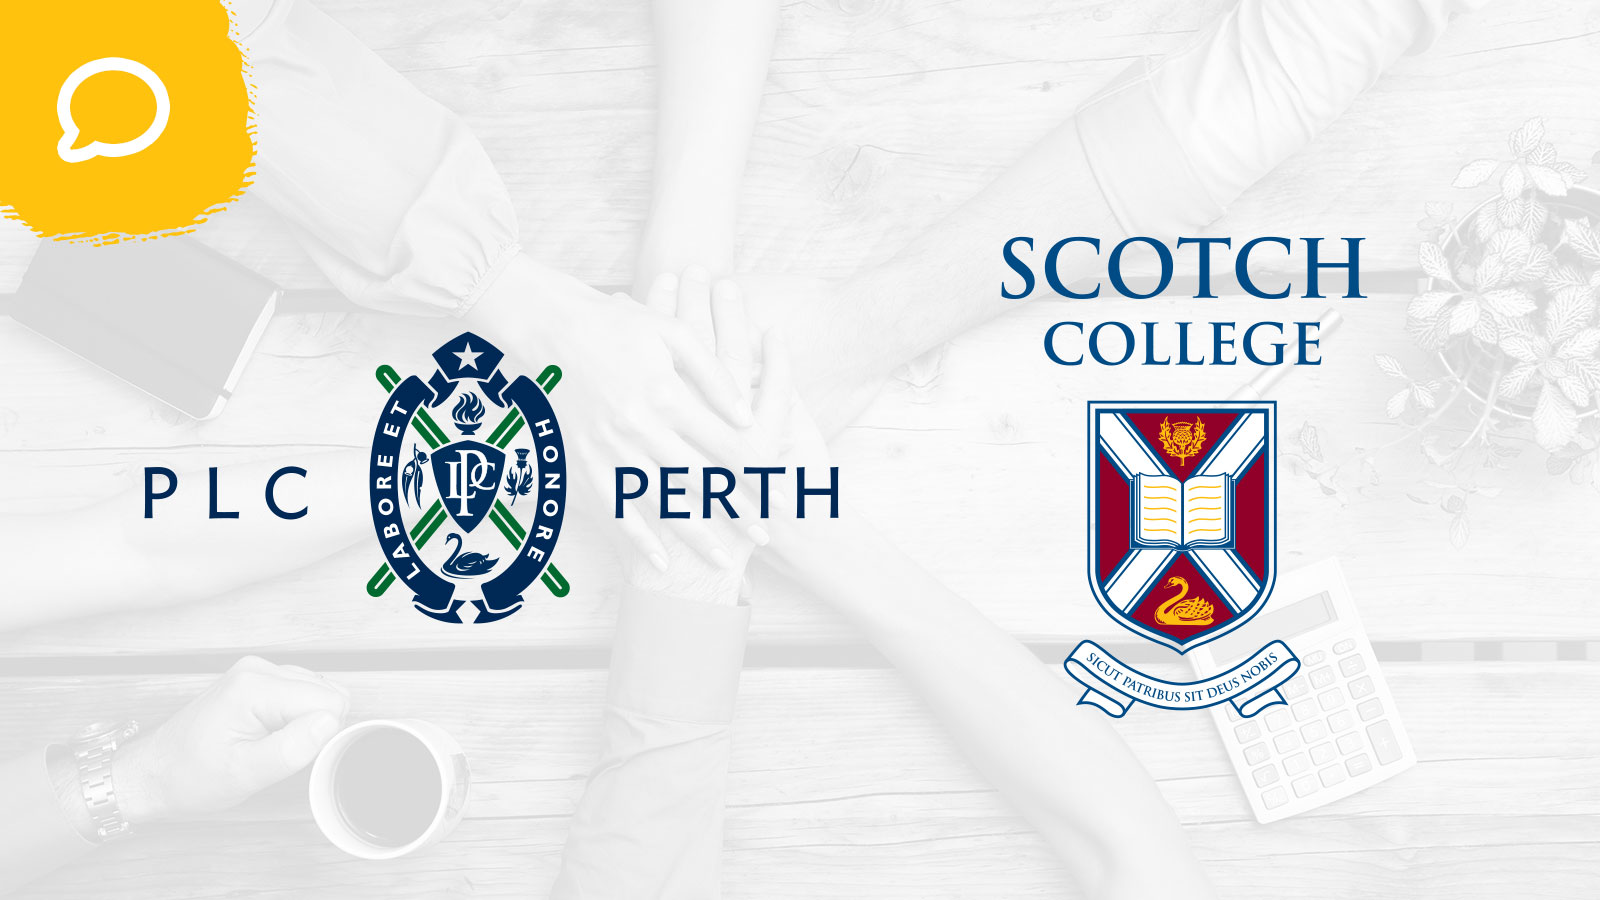 PLC Perth Scotch College